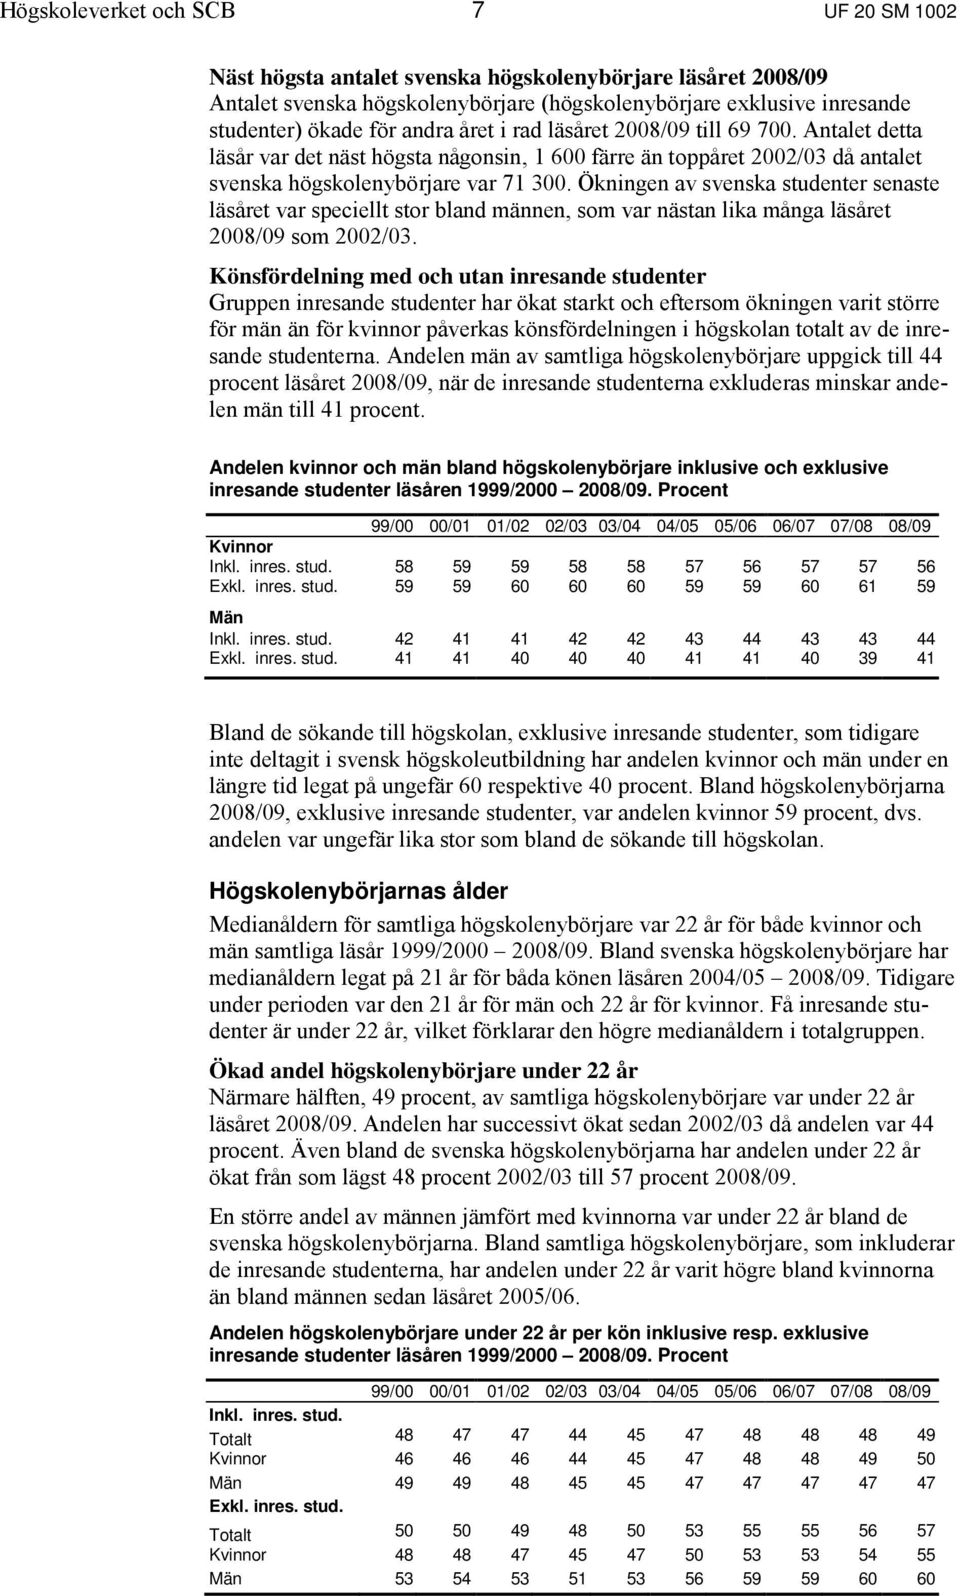 Ökningen av svenska studenter senaste läsåret var speciellt stor bland männen, som var nästan lika många läsåret 2008/09 som 2002/03.